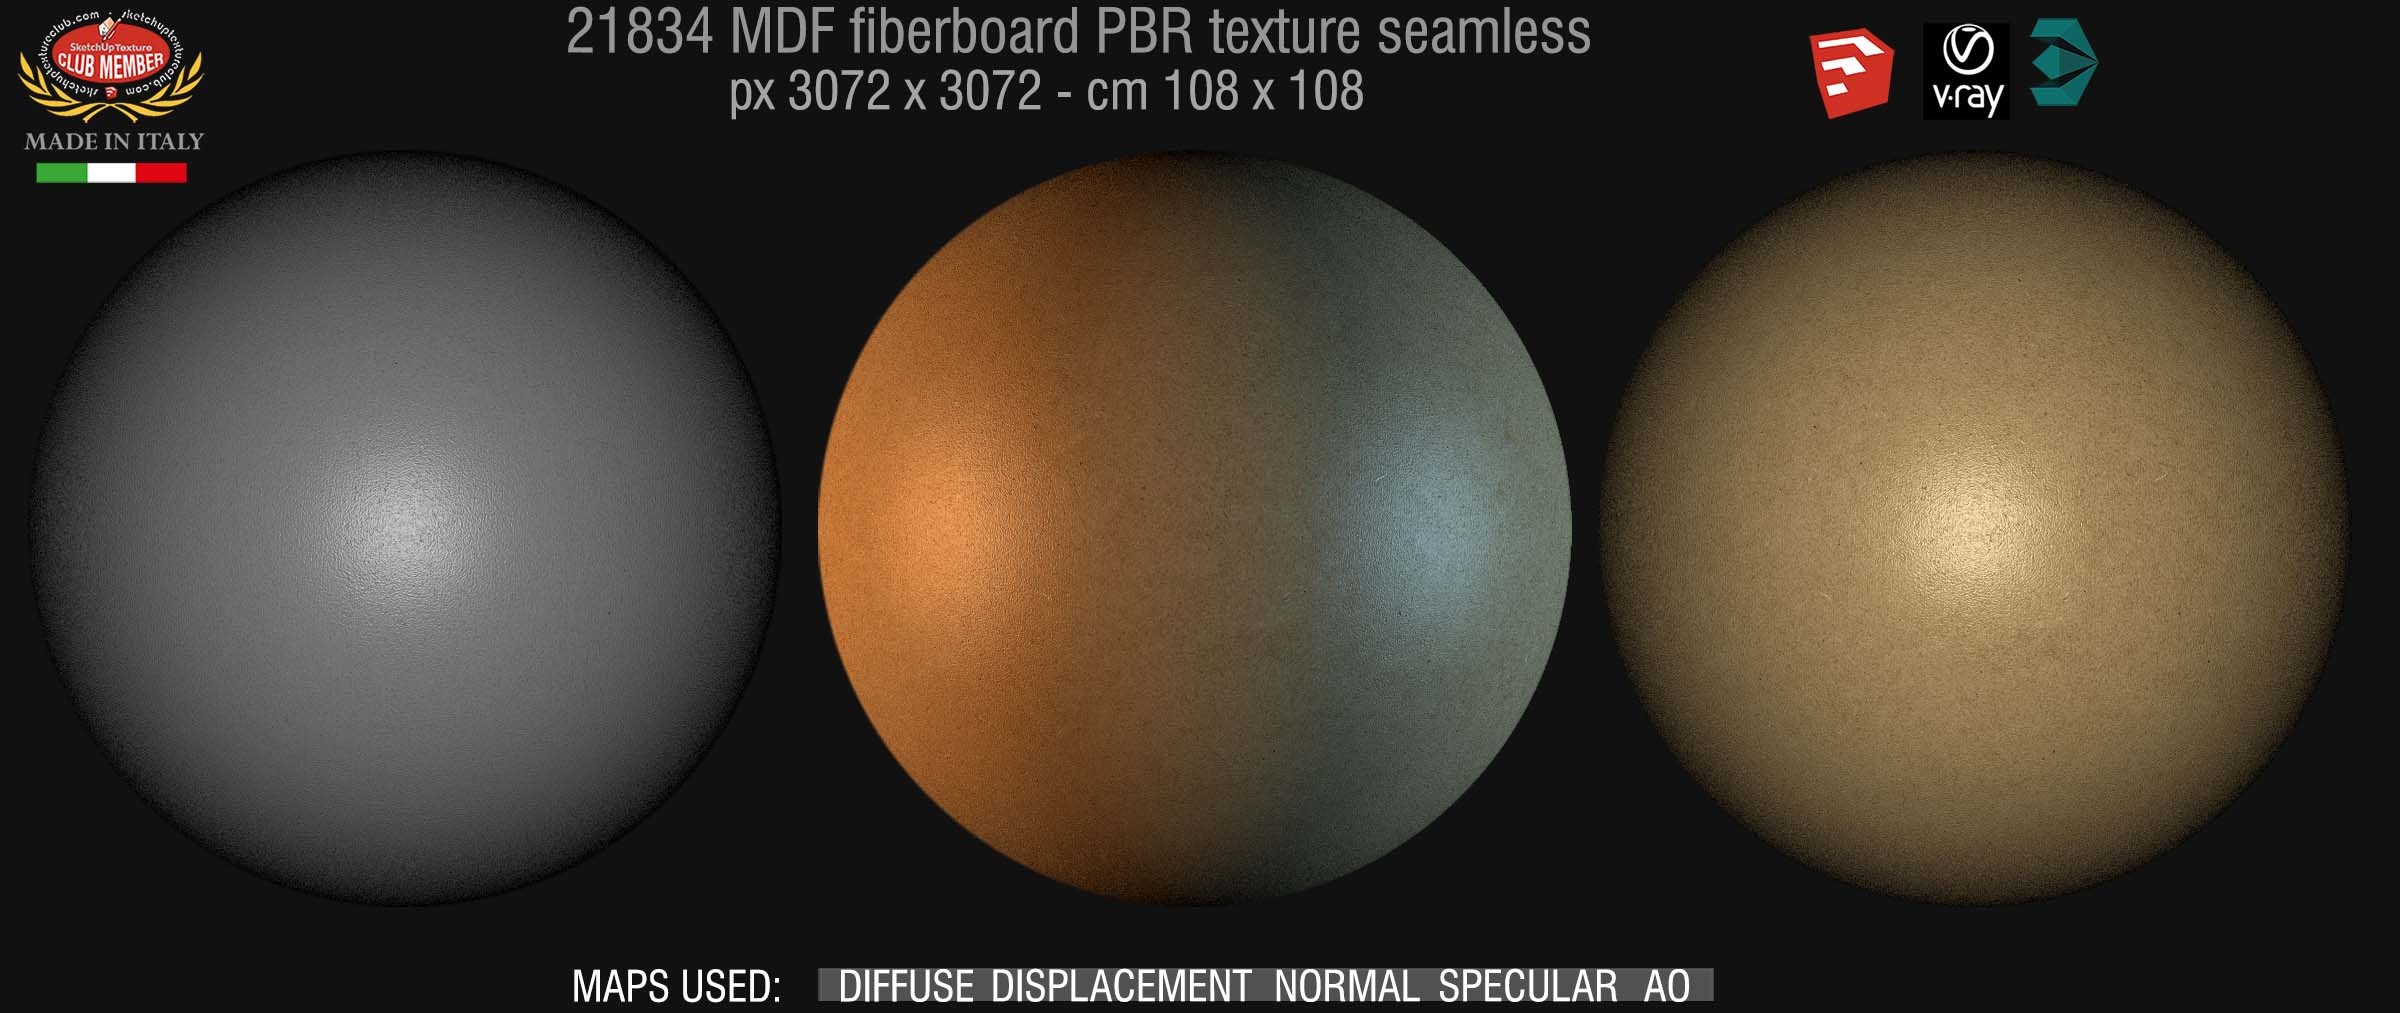 21834 MDF fiberboard PBR texture seamless DEMO